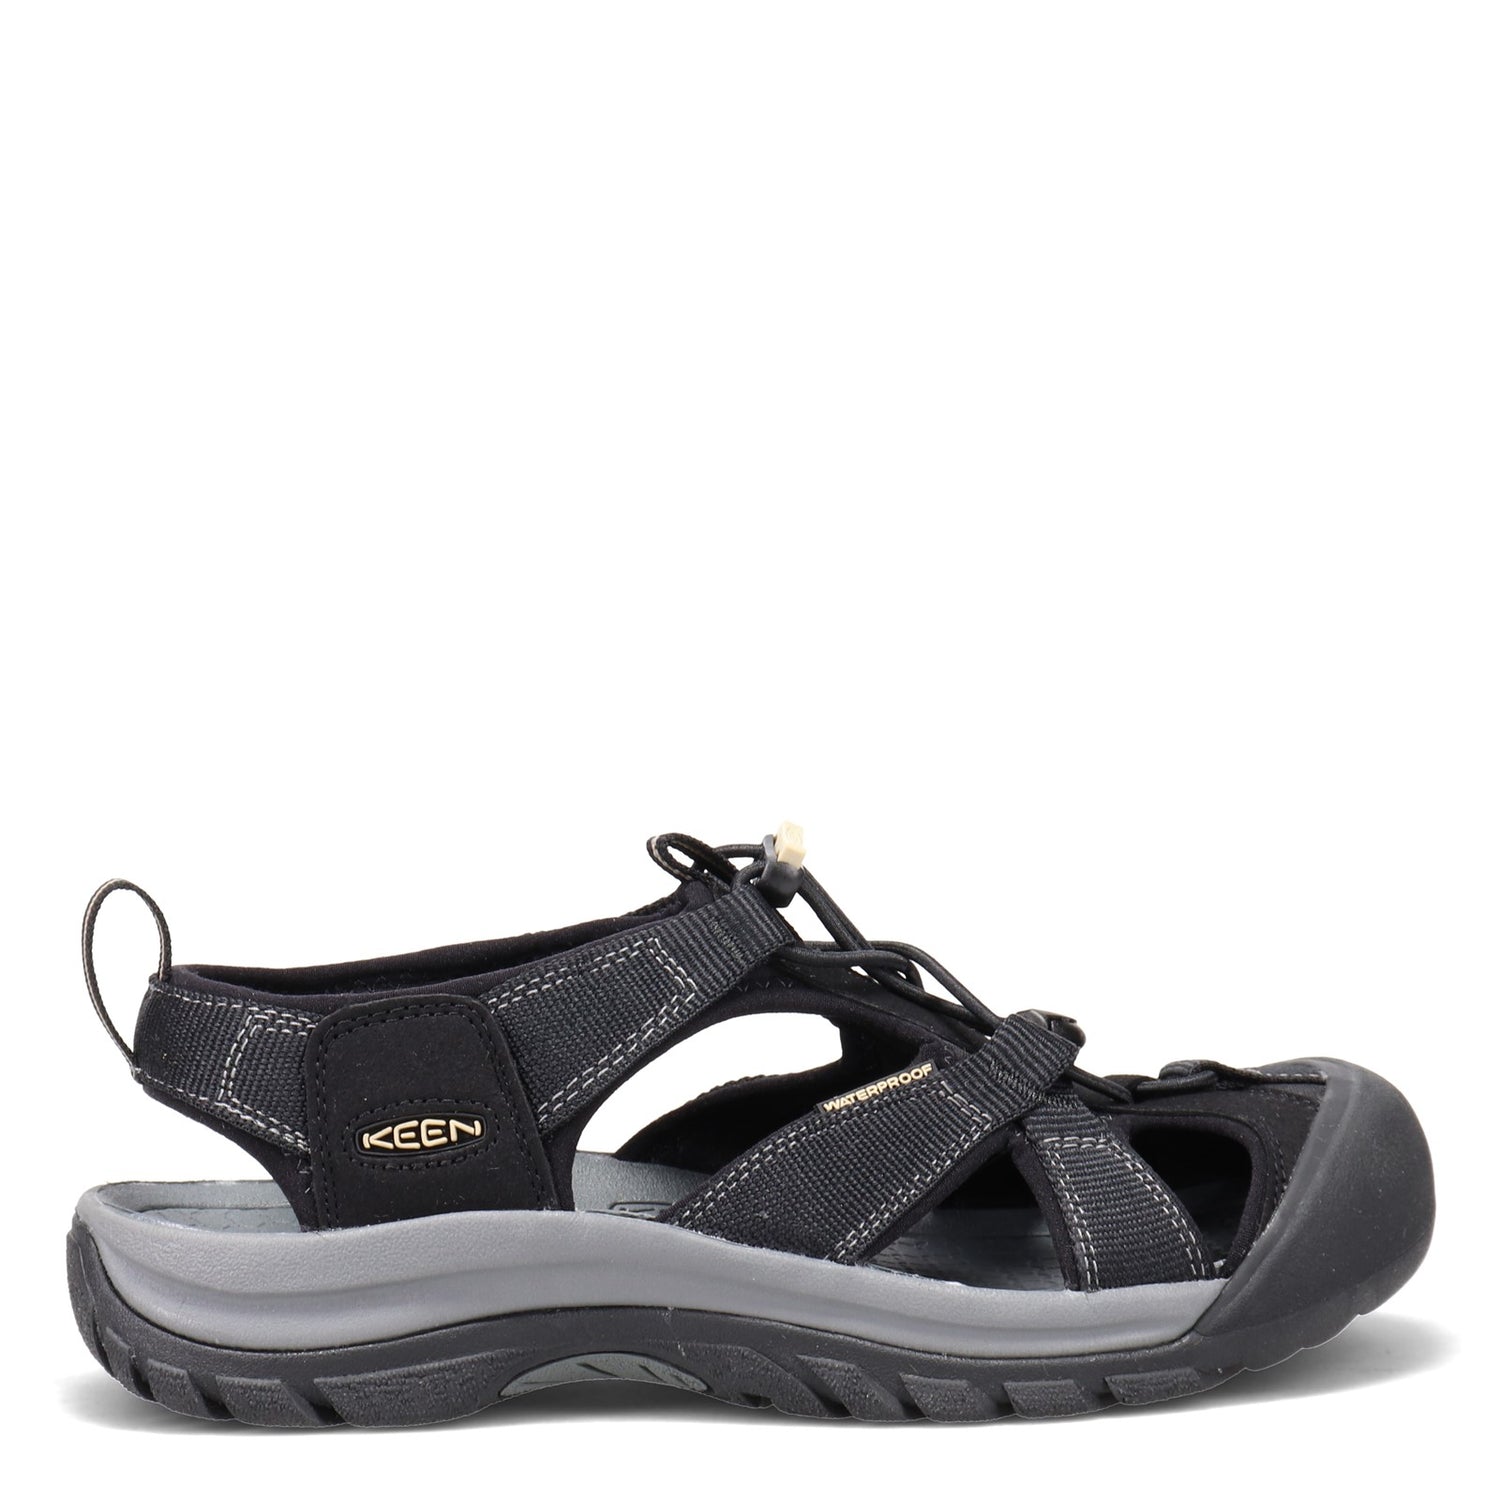 Peltz Shoes  Men's Keen Venice H2 Sandals BLACK 1002325